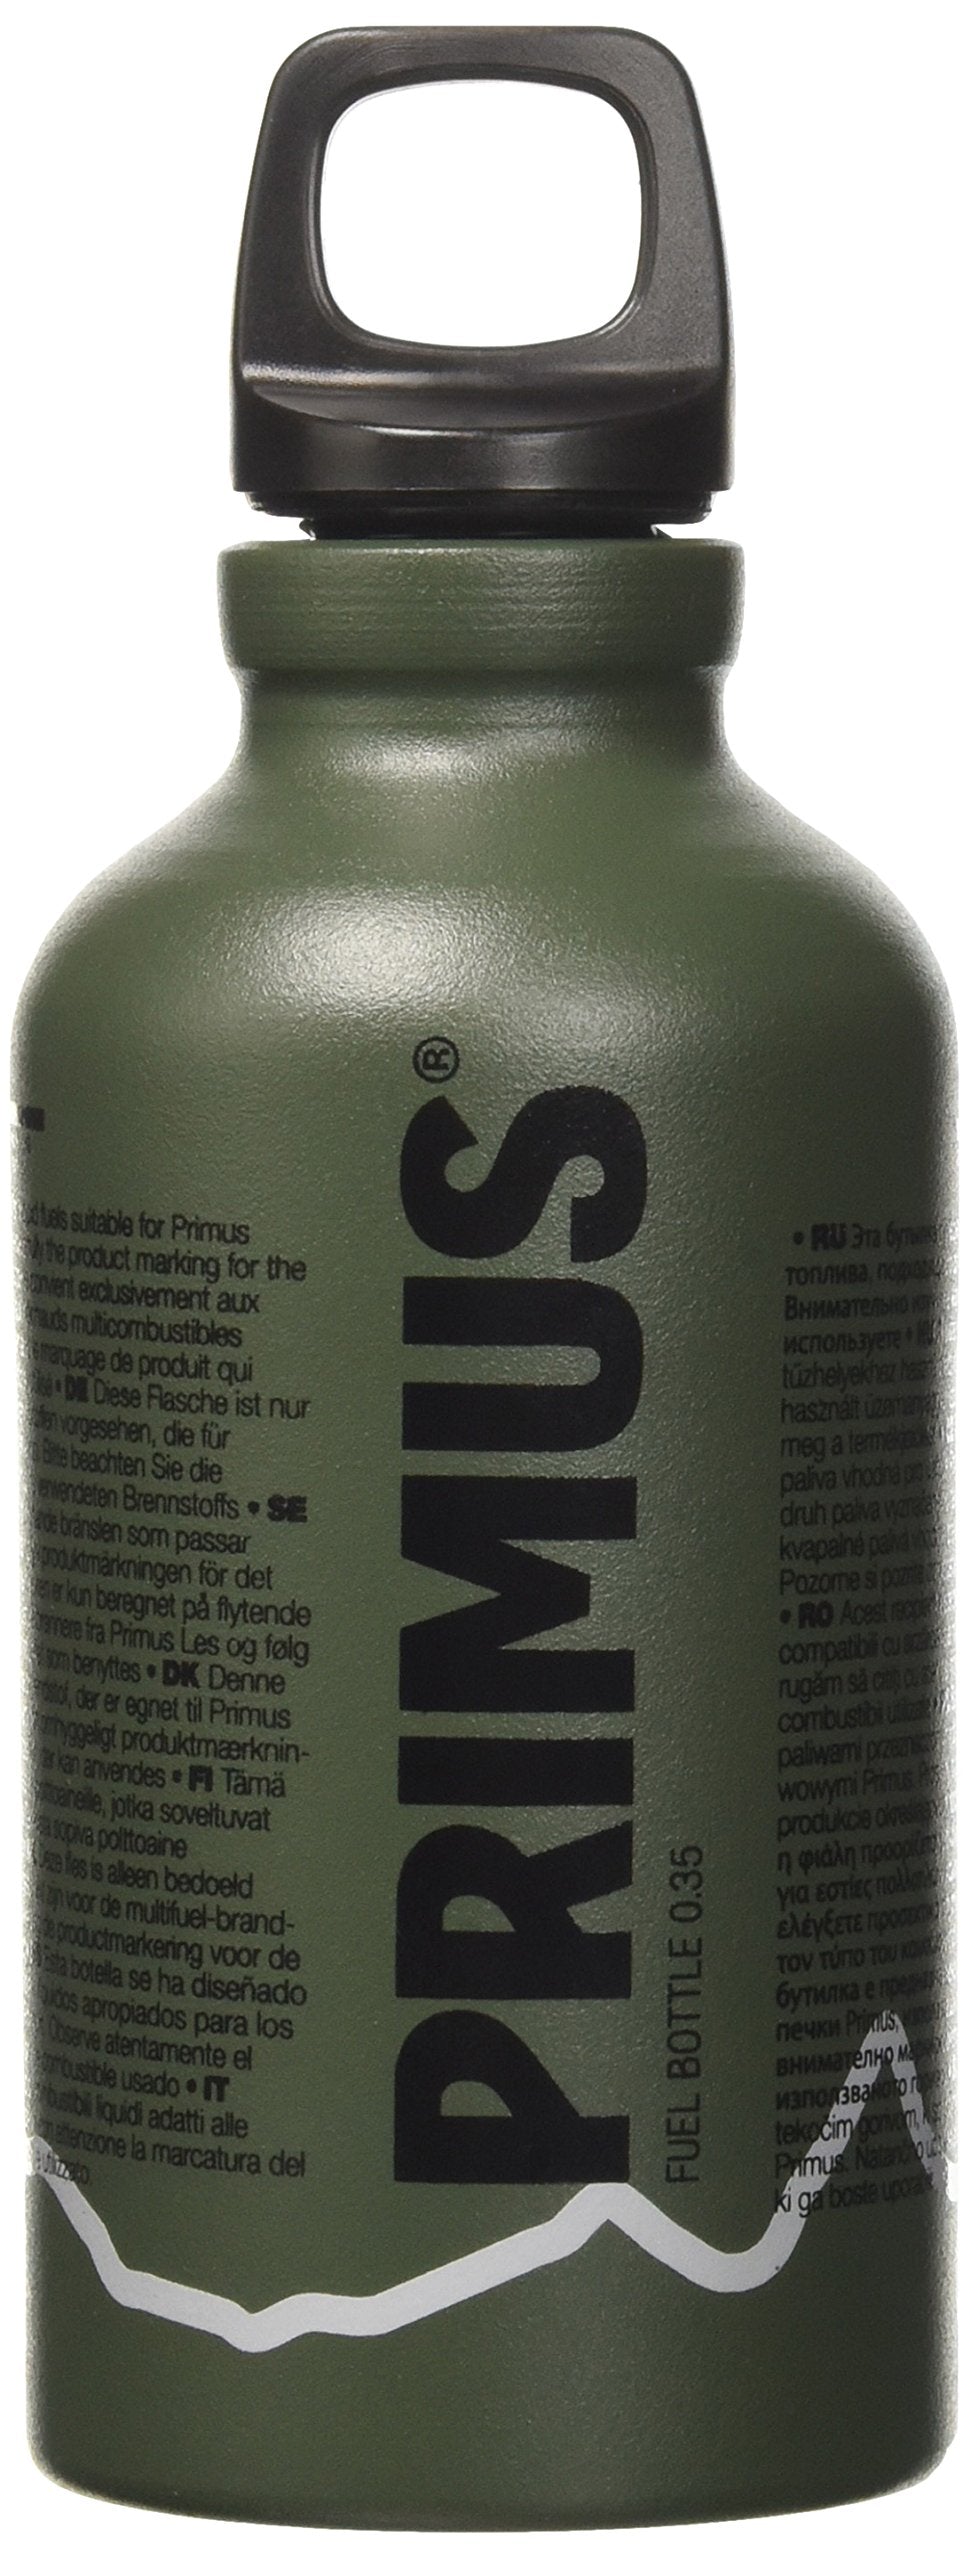 Primus Benzin/Petroleumkocher Brennstoffflasche